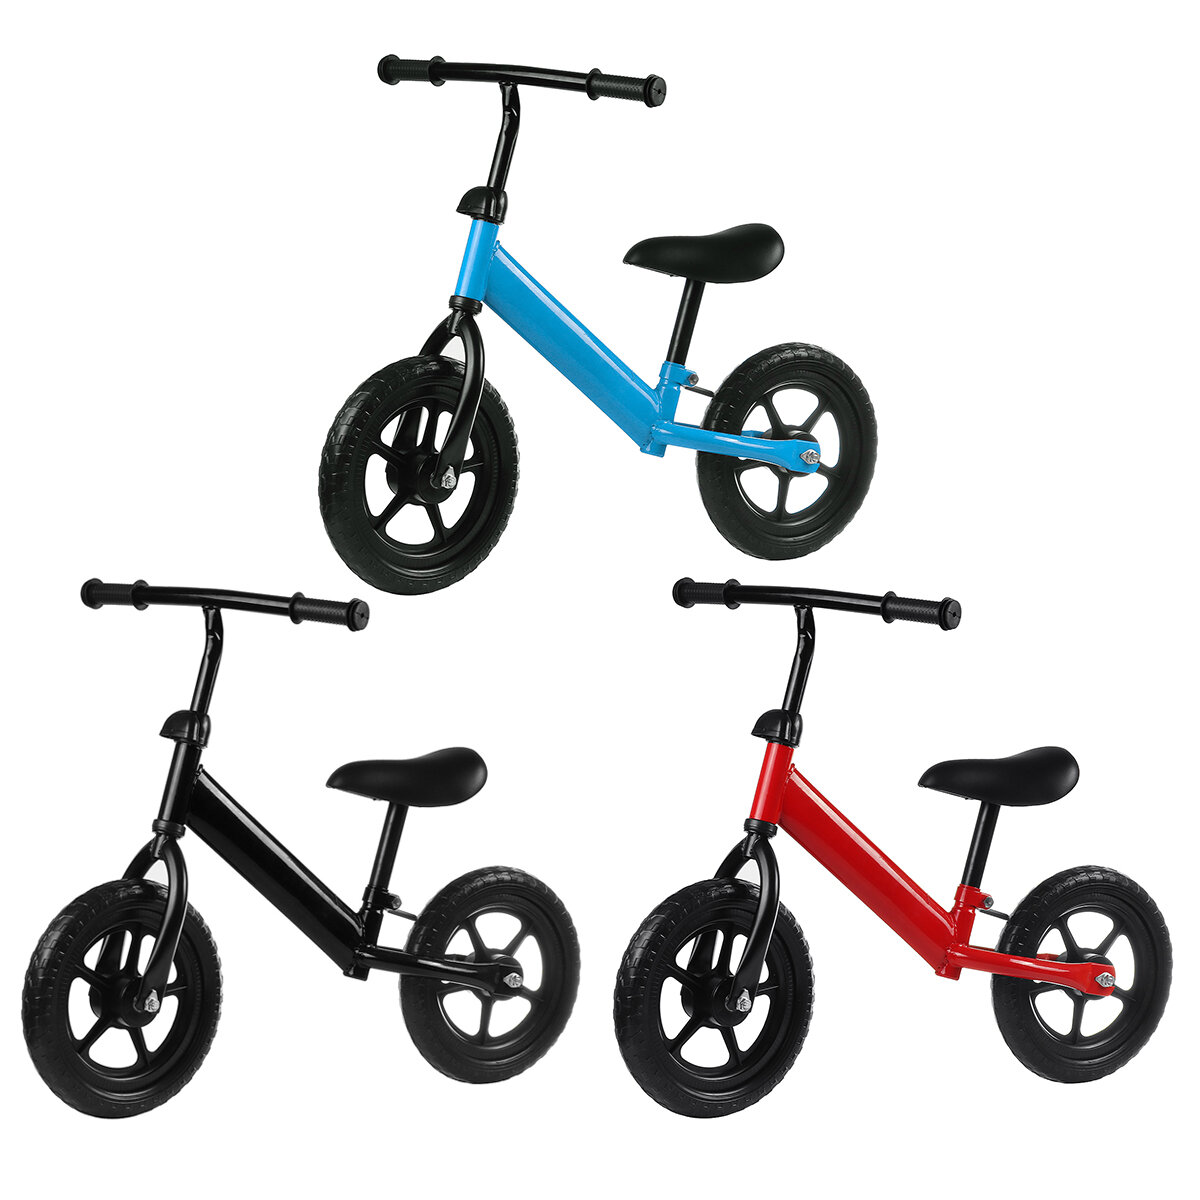 دراجة توازن للأطفال بدون دواسات ارتفاع قابل للتعديل لتدريب الأطفال الصغار على الجري والتدريب على ركوب الدراجات في الهواء